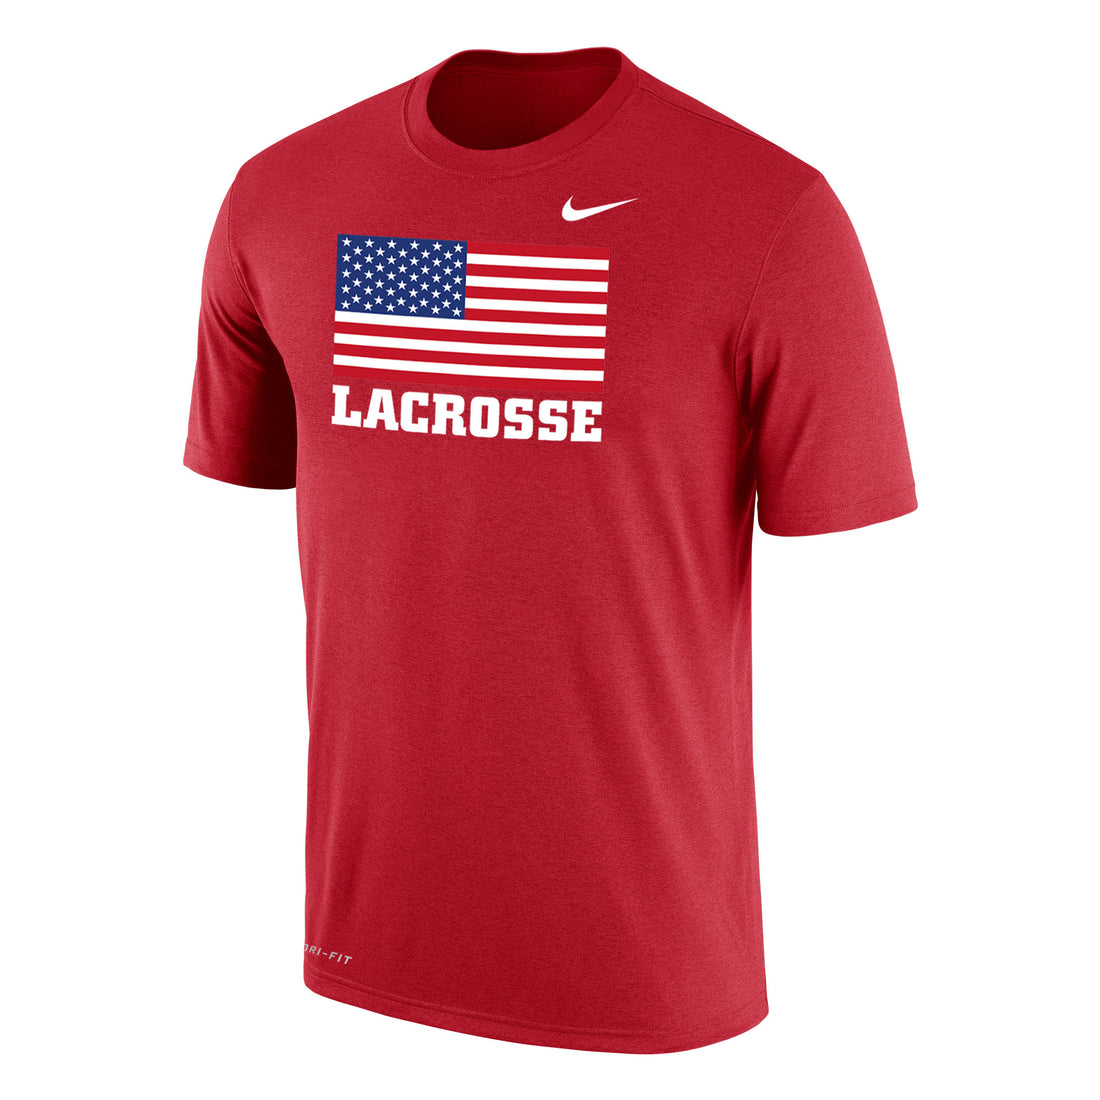 FINAL SALE: USA Lacrosse Flag Nike Dri-FIT Cotton SS